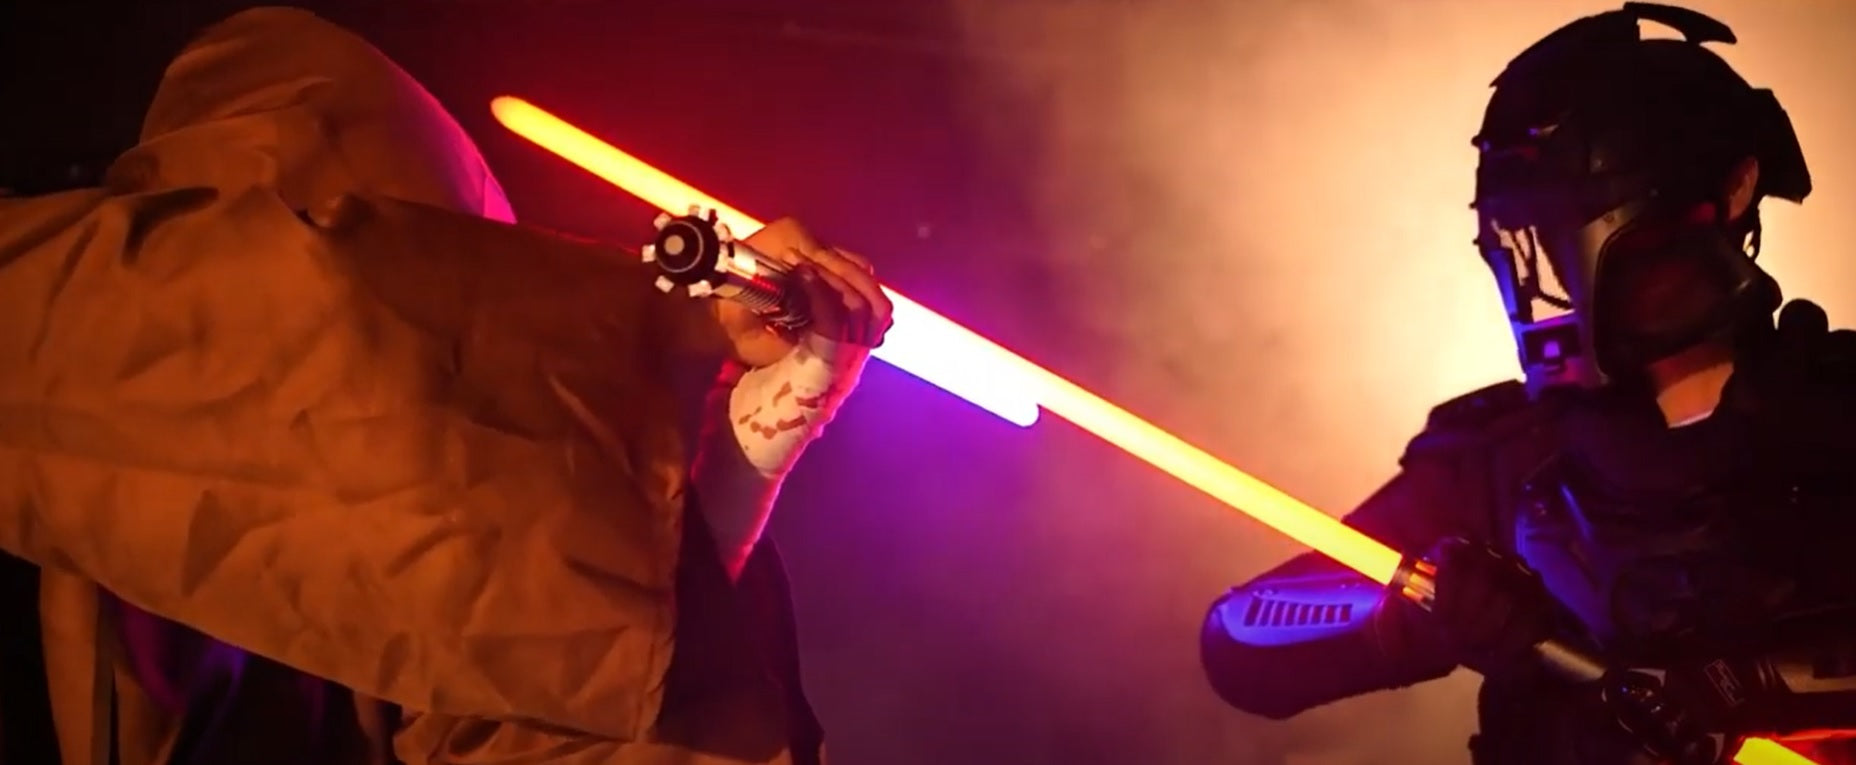 Load video: lightning stik saber battle scenes